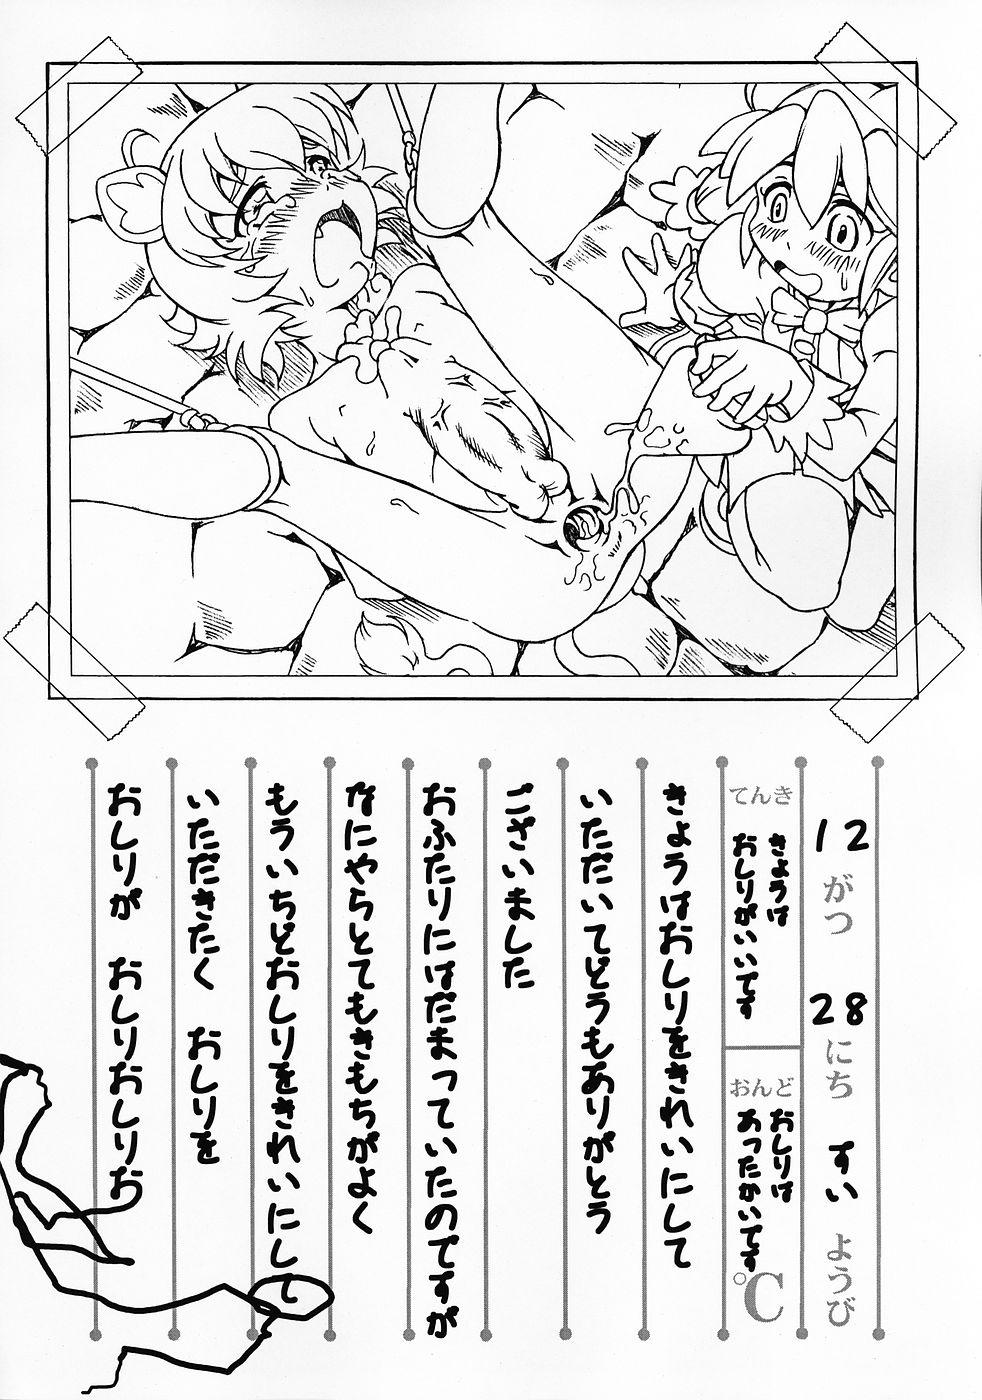 Pau Grande Rorinoko Tawashi - Fushigiboshi no futagohime Tattoos - Page 9